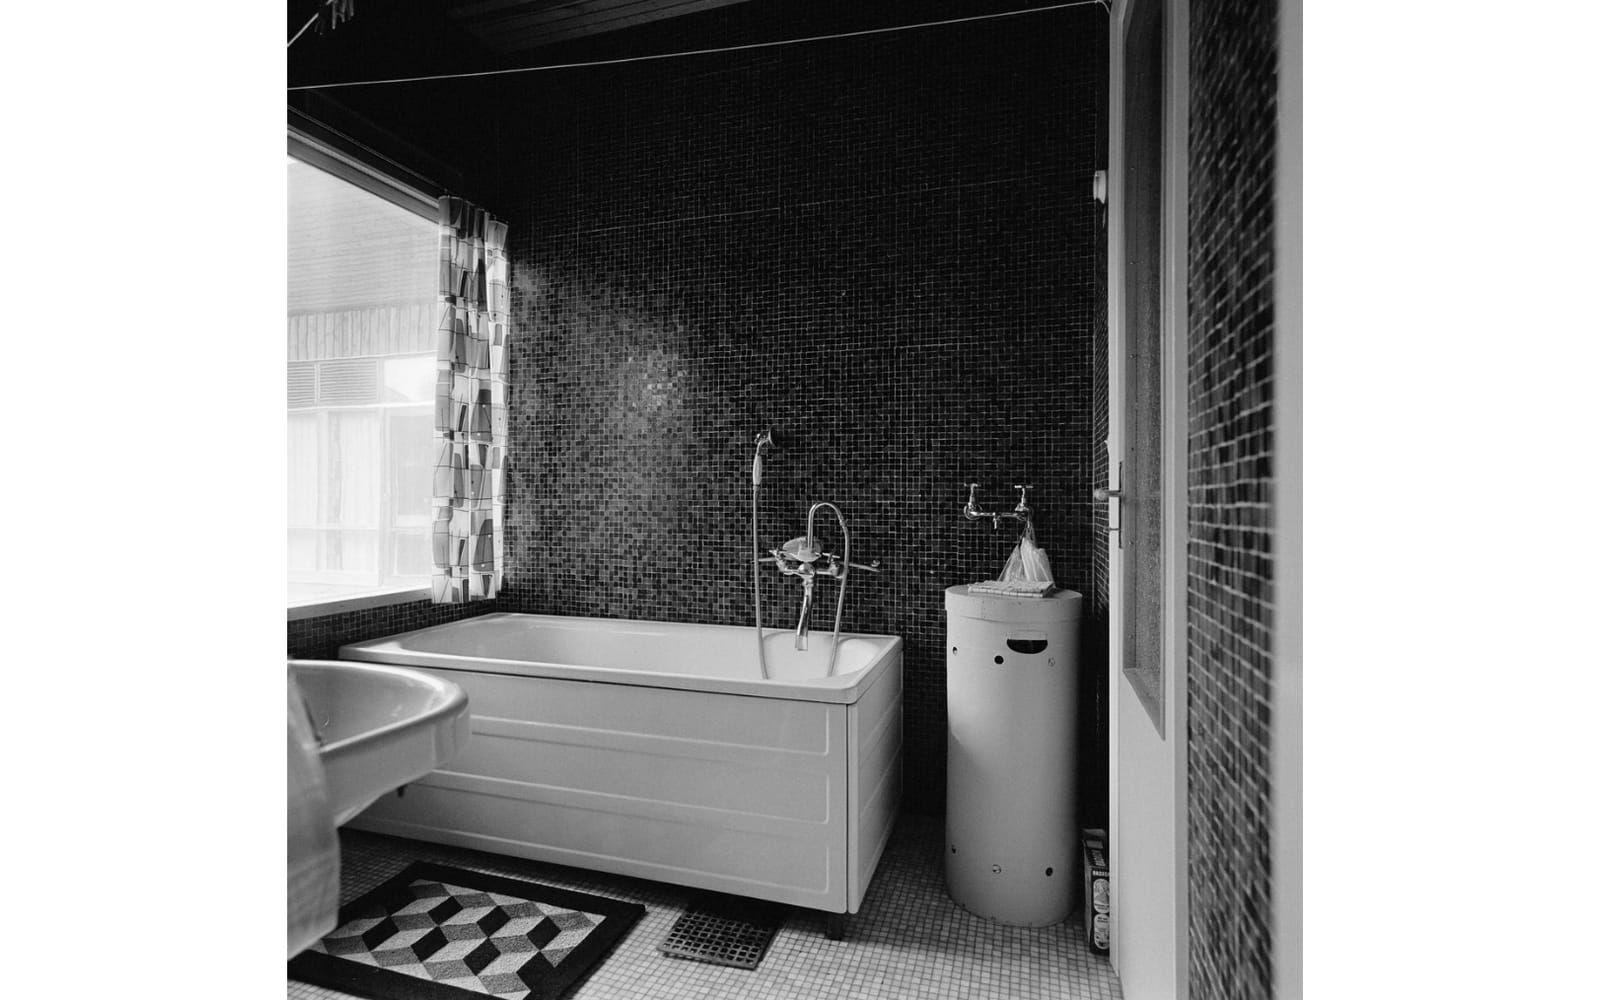 På 1950-talet höjdes levnadsstandarden för många genom att de fick ett badrum. Normen var att det skulle vara 2,5 kvadratmeter stort.